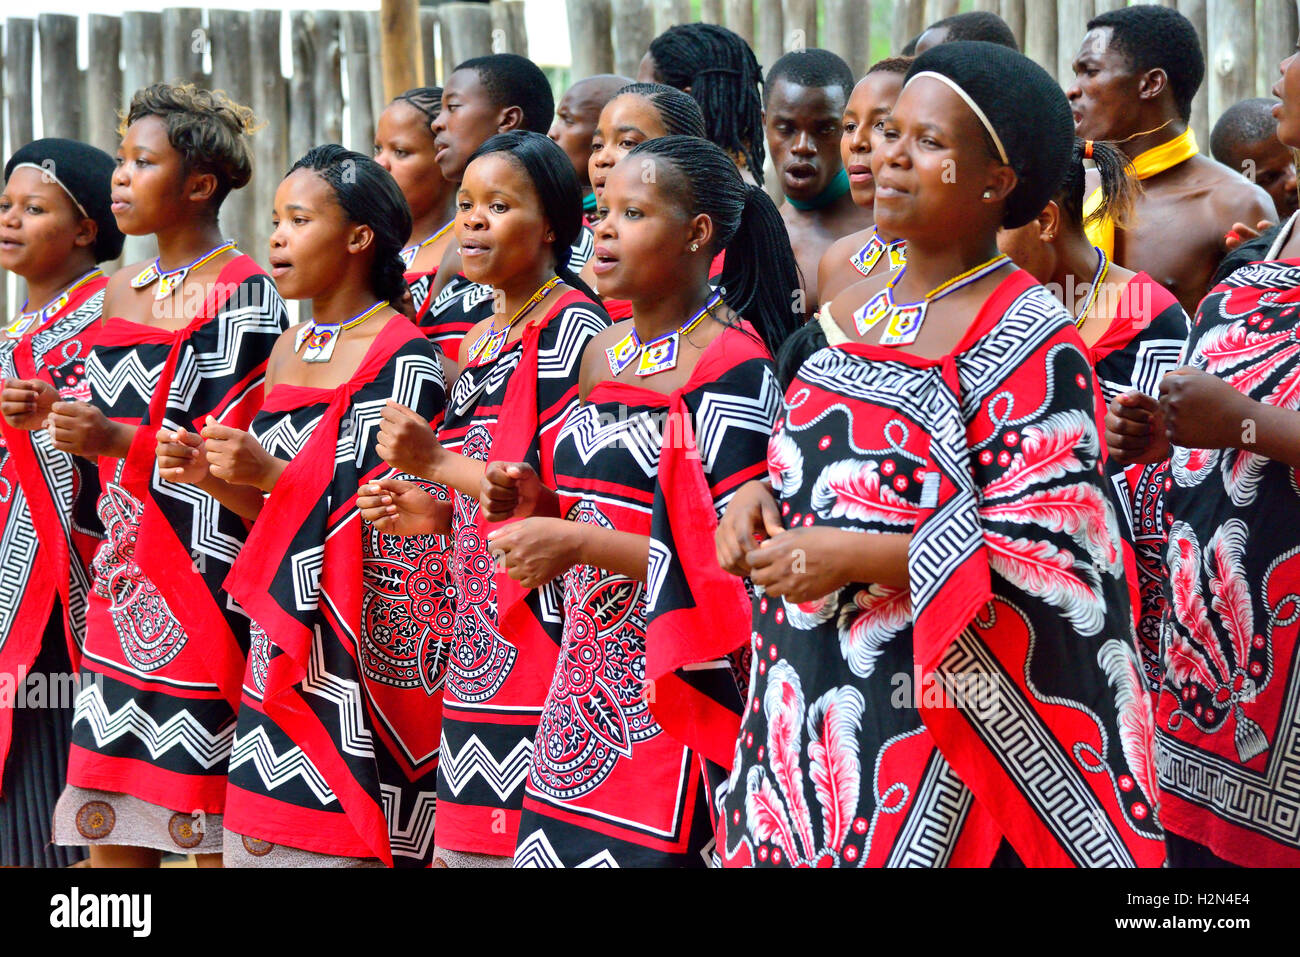 Swazi ethnic group